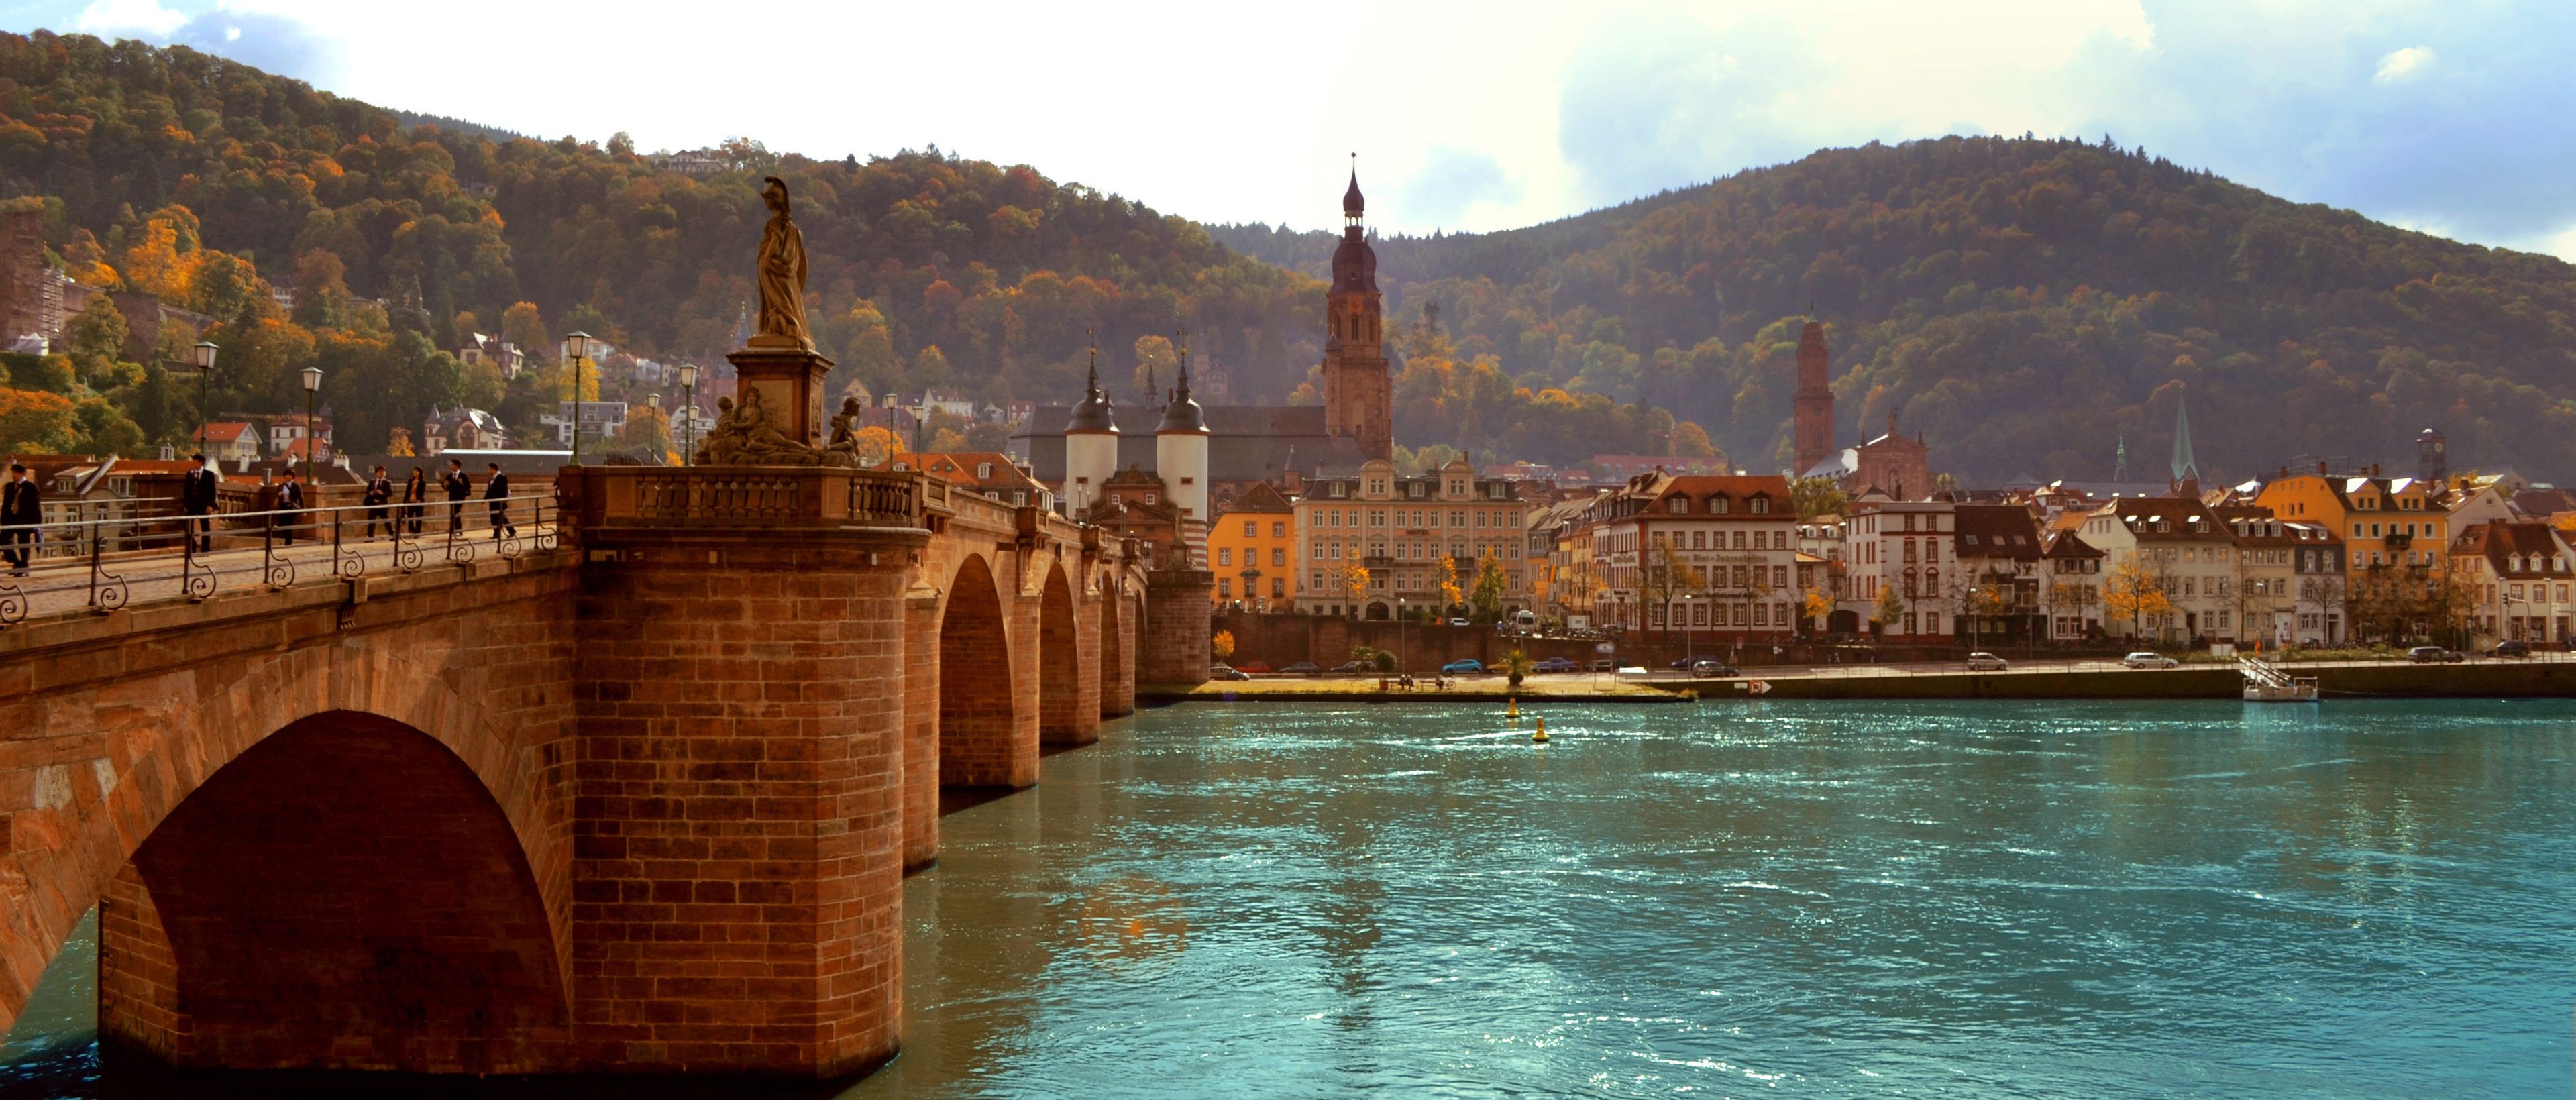 Preview Image: Fotografieren in Heidelberg